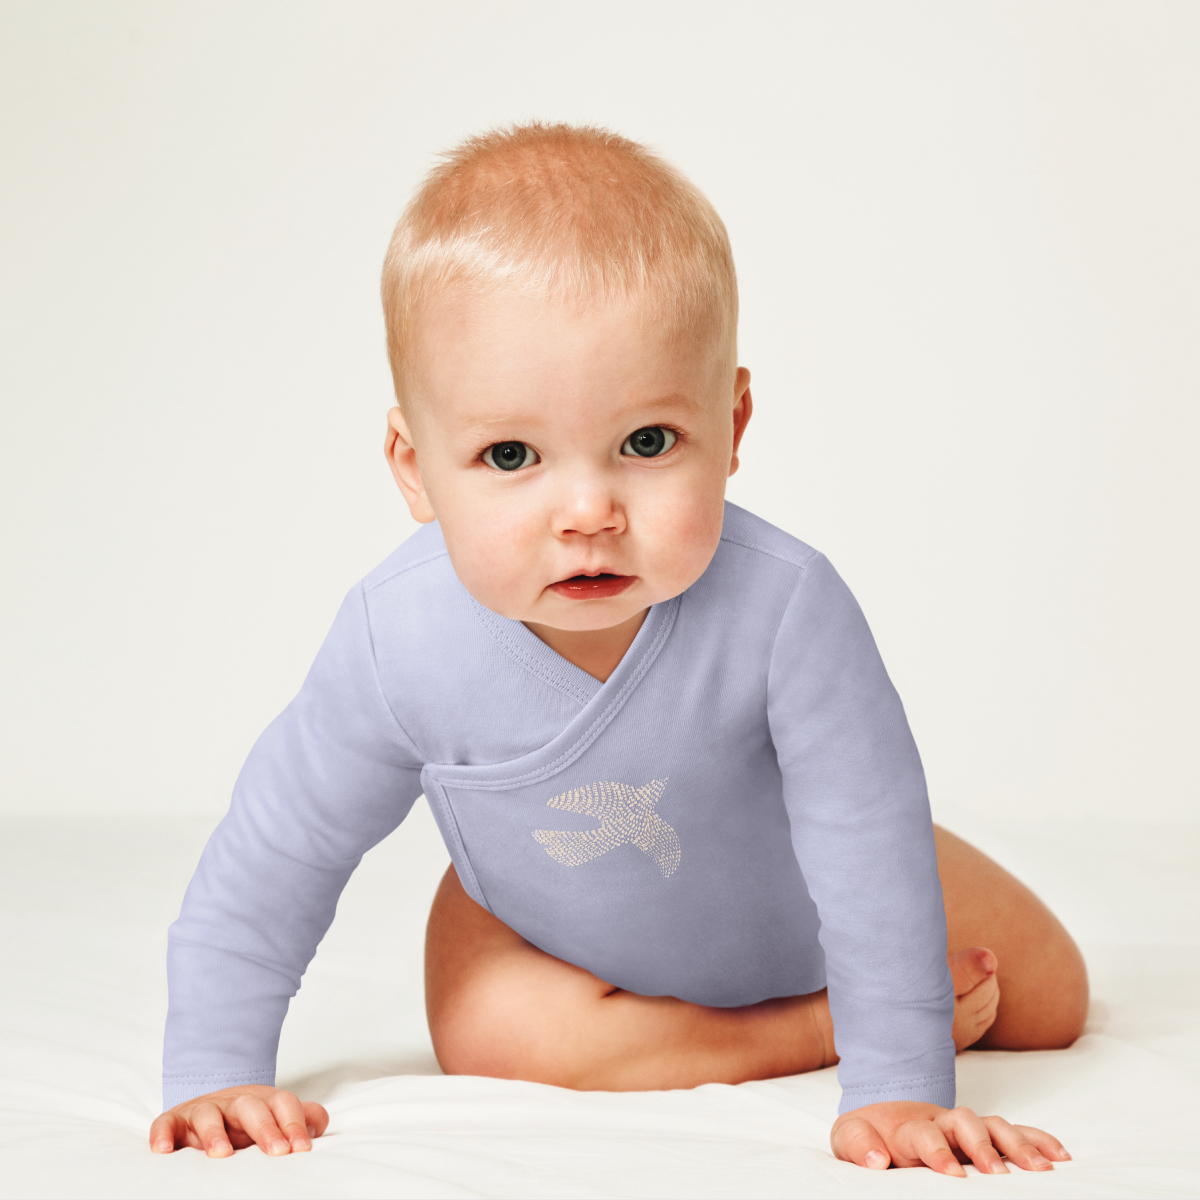 Body bébé mixte emmanchures US à manches longues en coton blanc en promo à  1,99 €